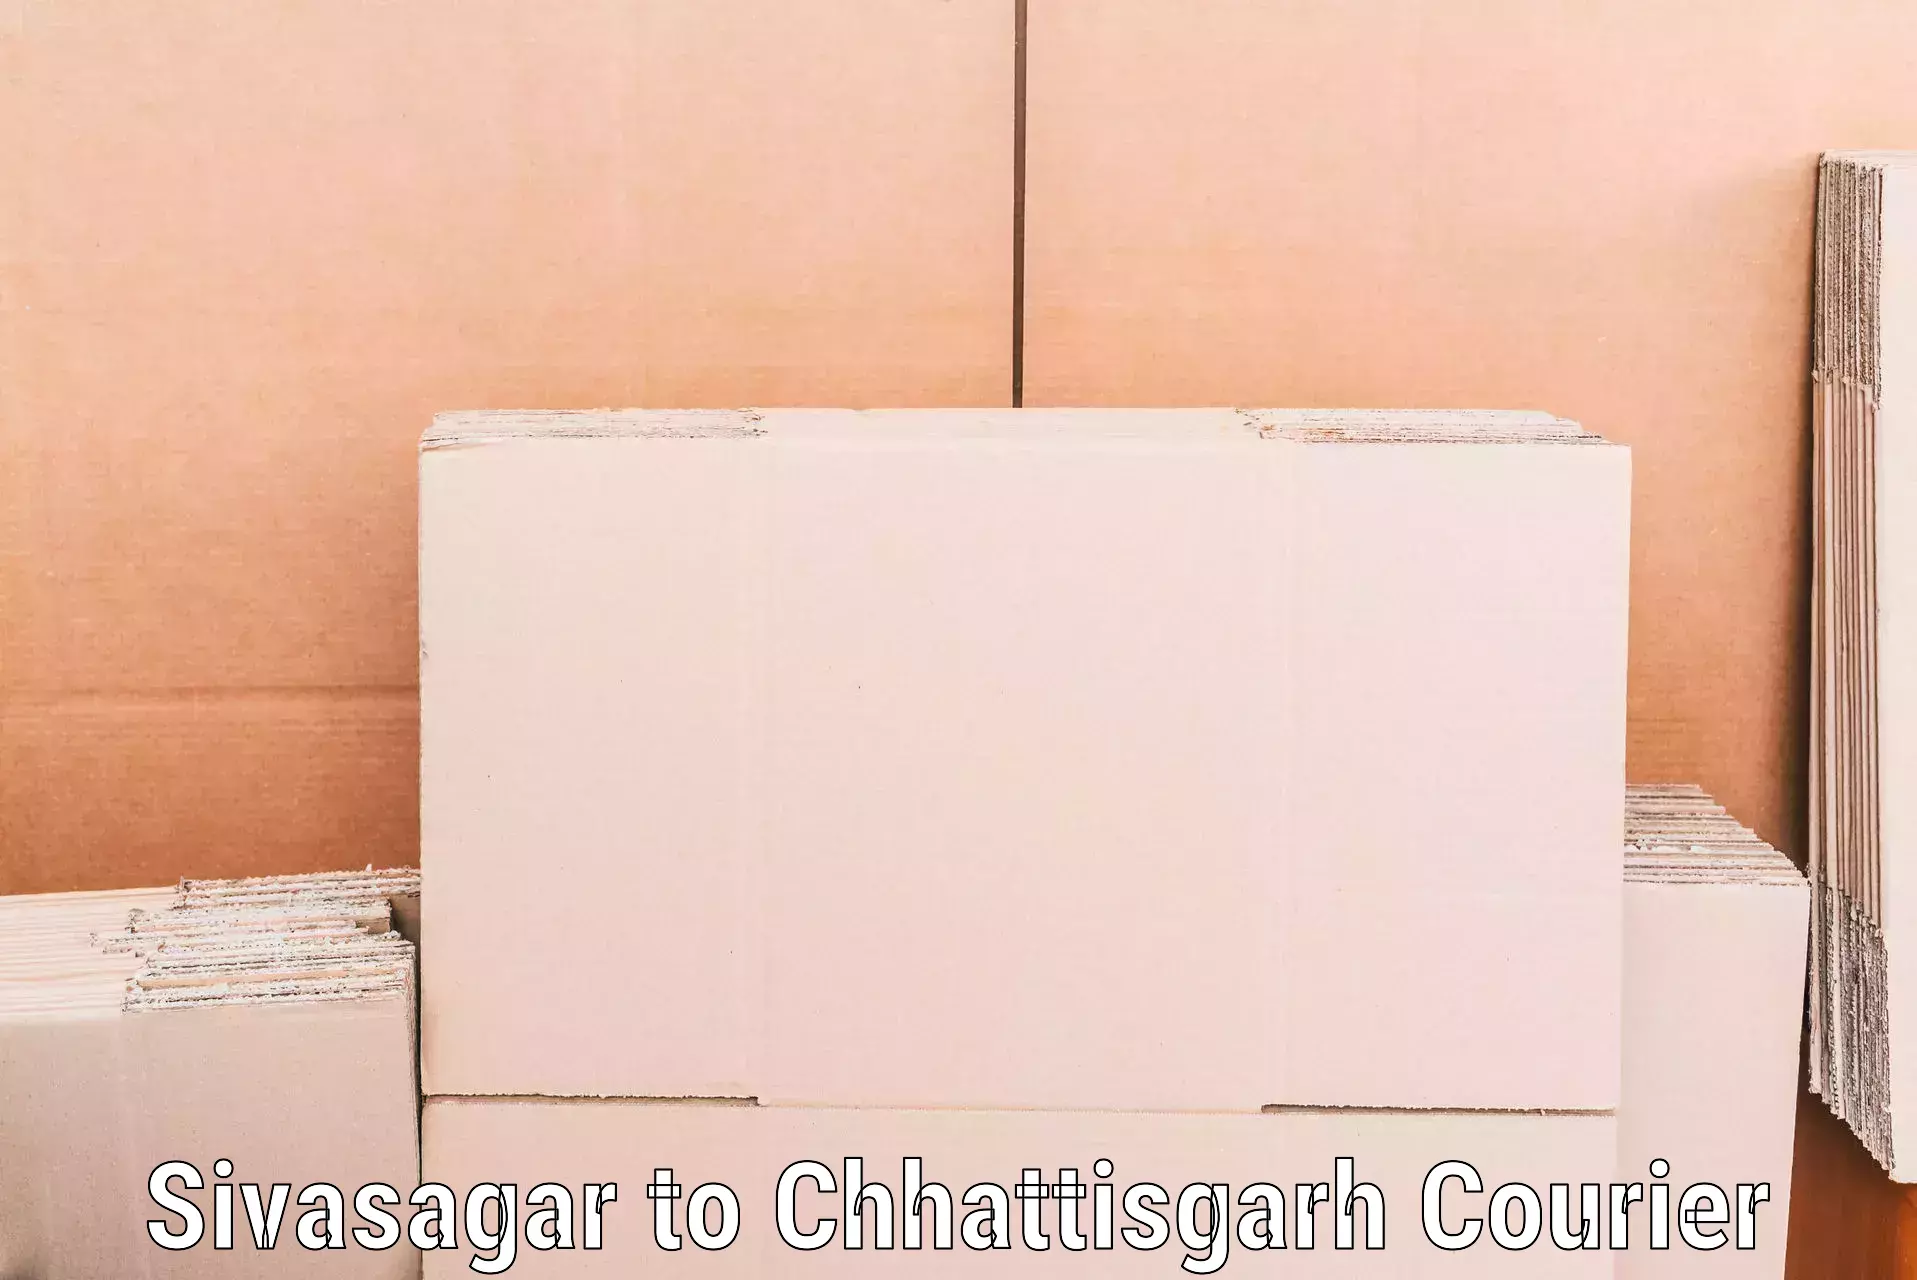 Household goods transporters in Sivasagar to Chhattisgarh